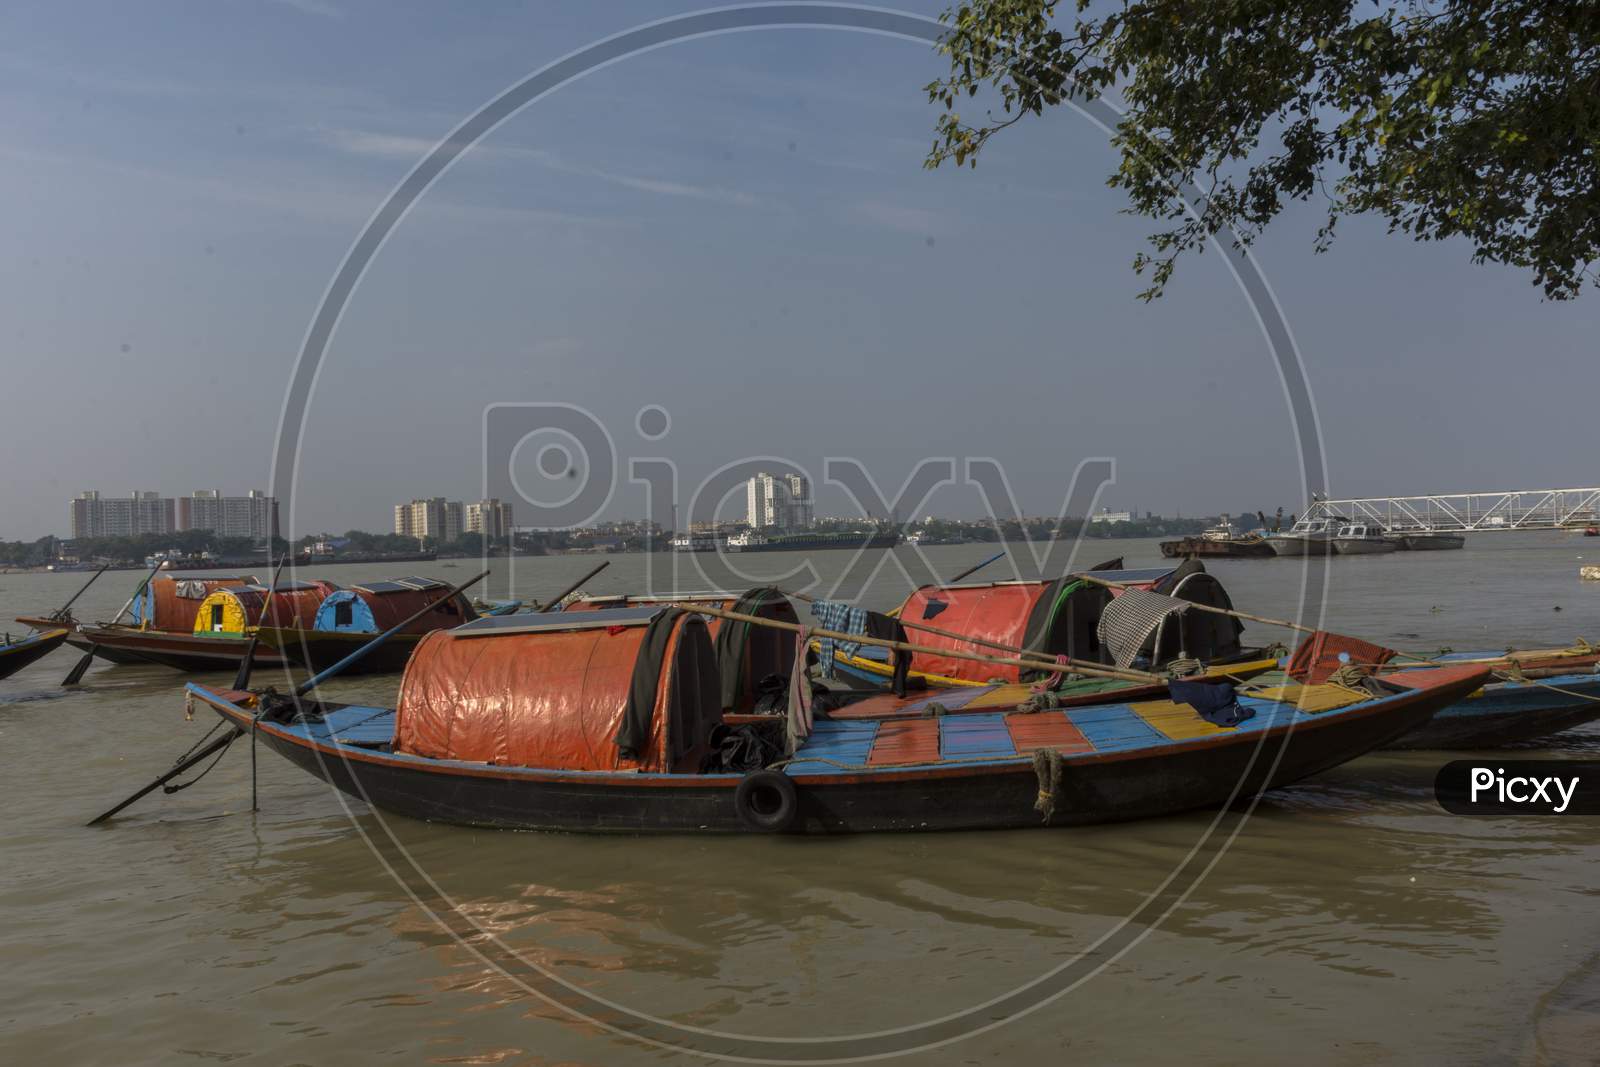 Anchored Floating Boats On River Hoogly At Priencep Ghat, Kolkata.